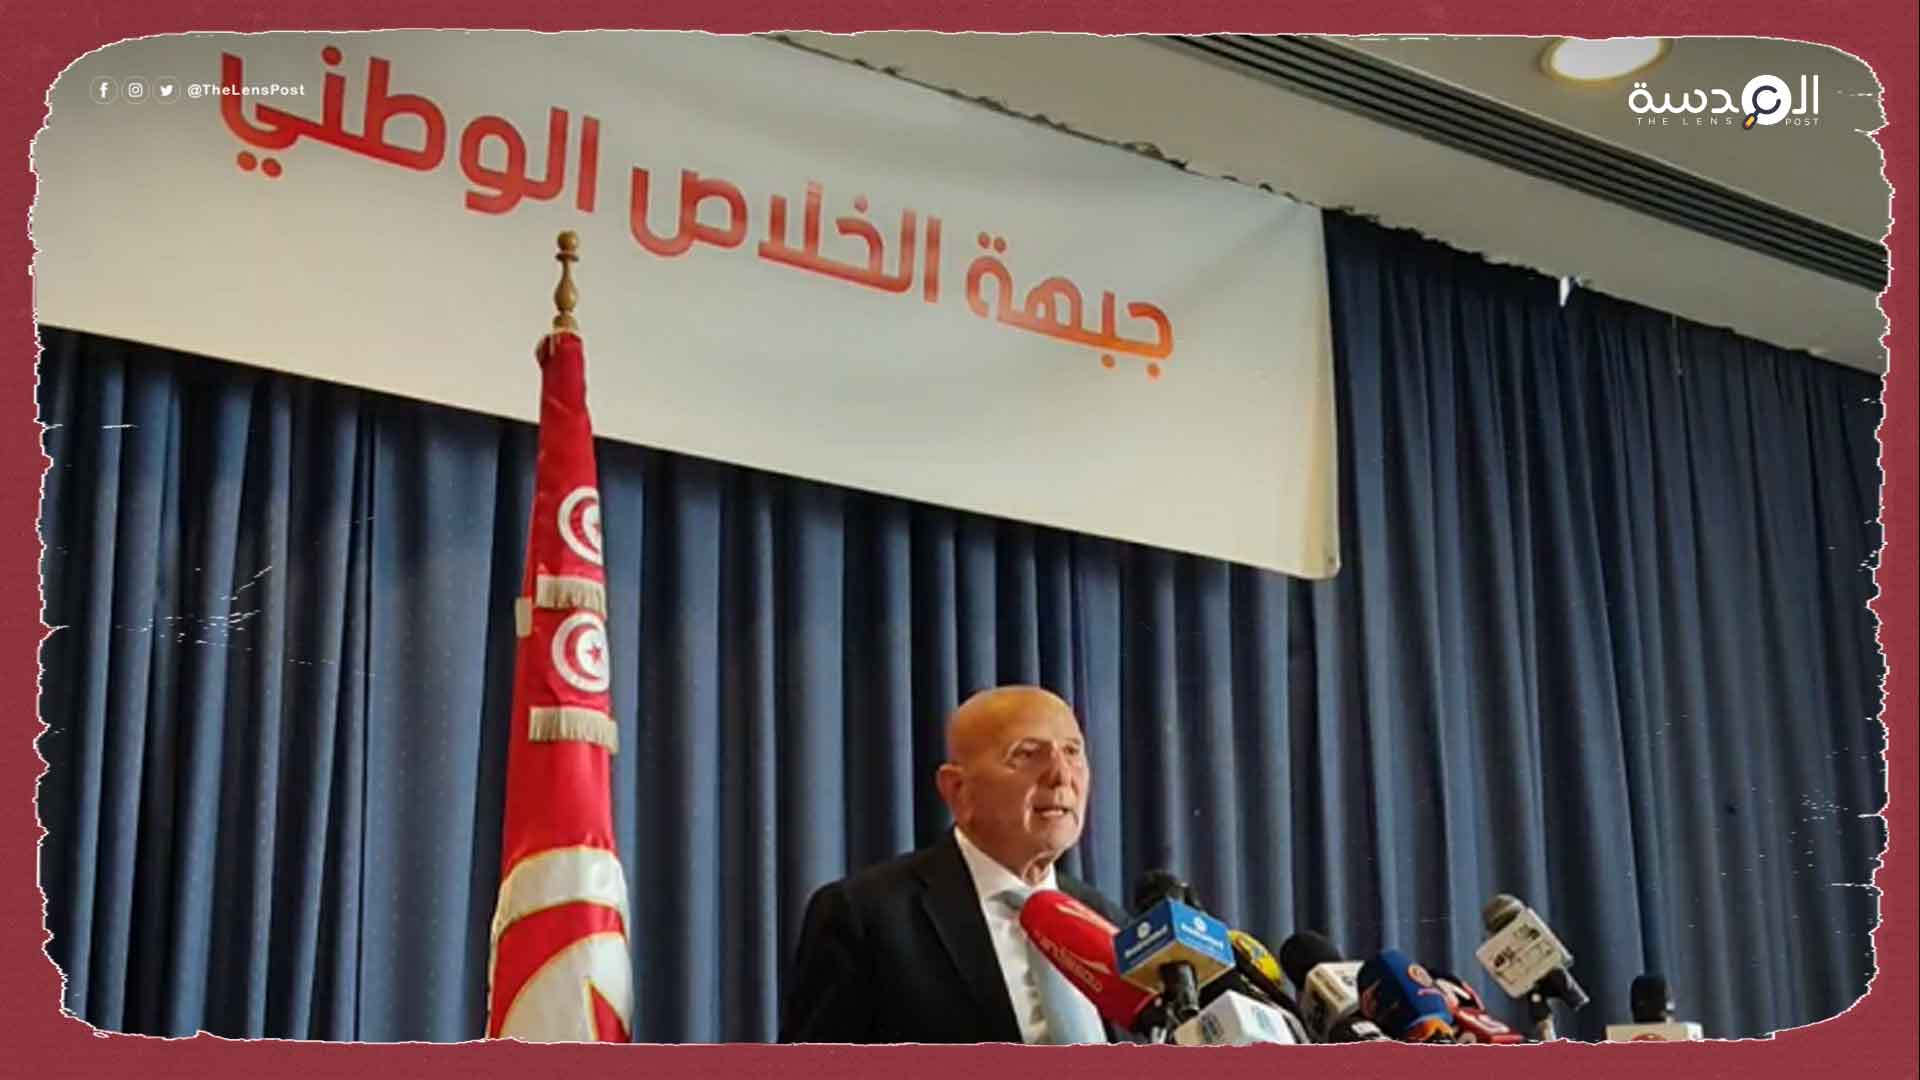 بعد تحريضه على المعارضة.. جبهة الخلاص تهاجم الرئيس التونسي